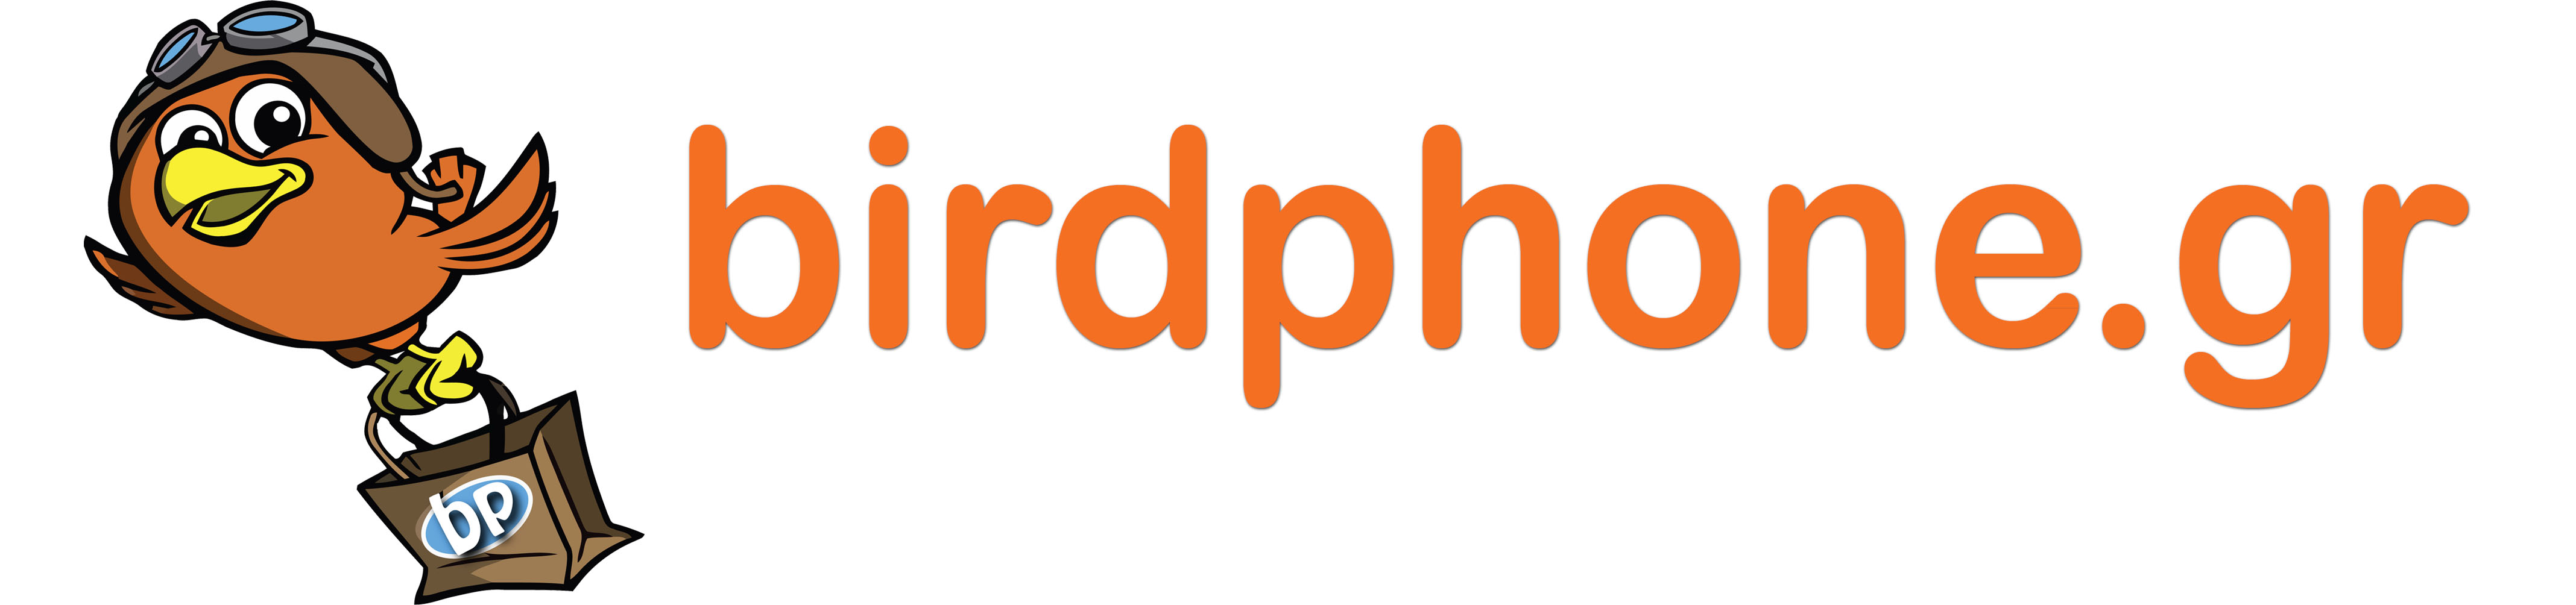 birdphone_logo